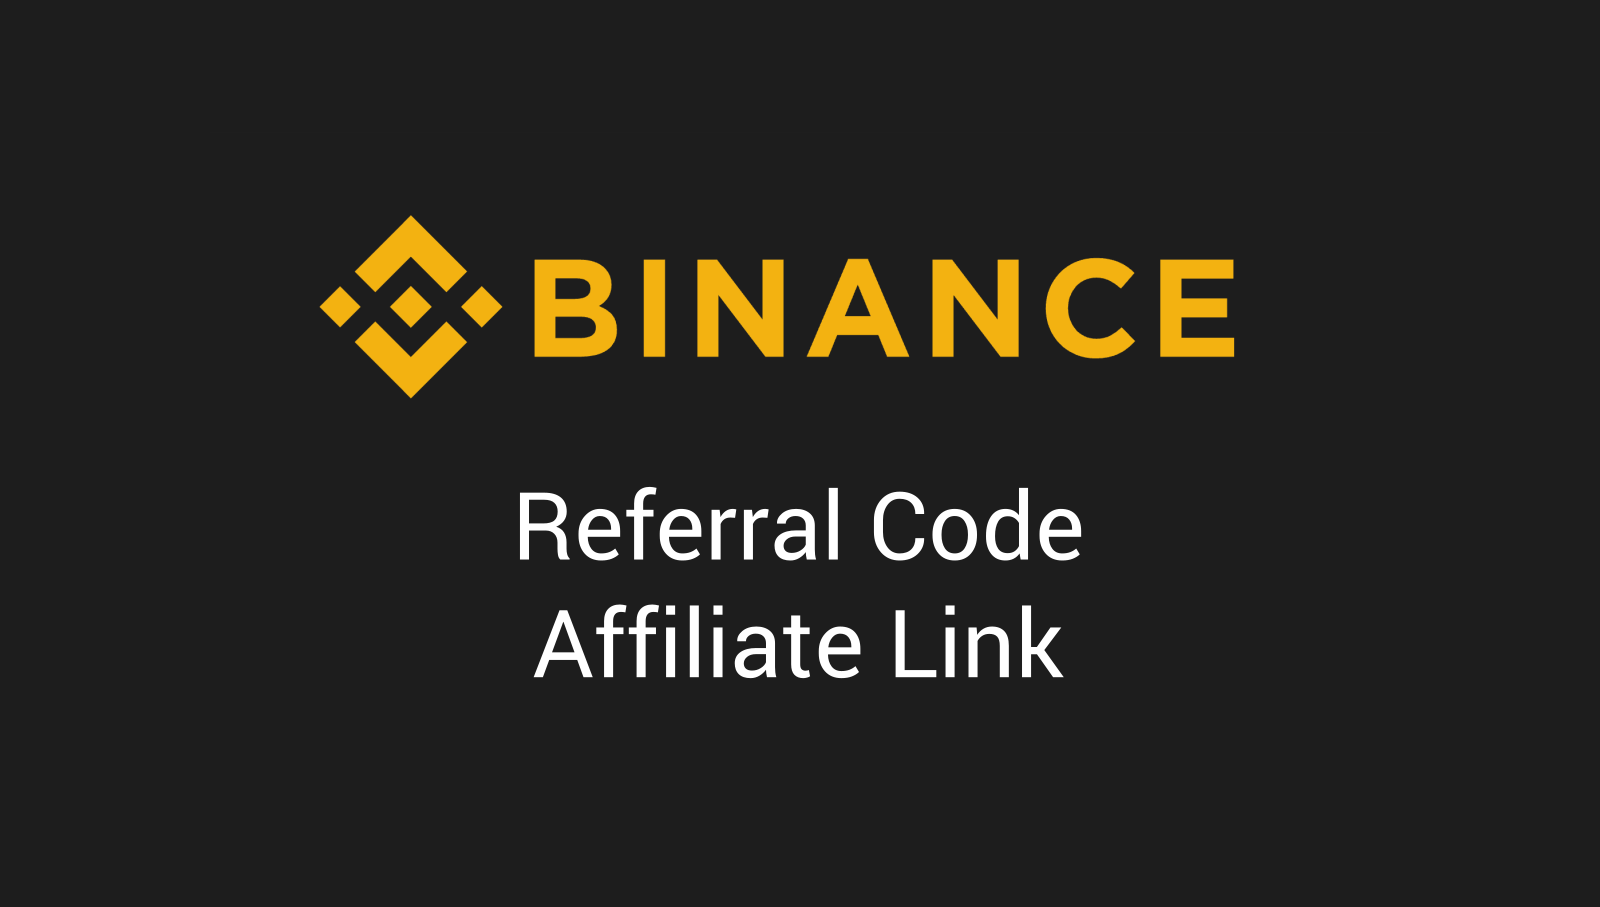 Create binance referral code - affiliate link